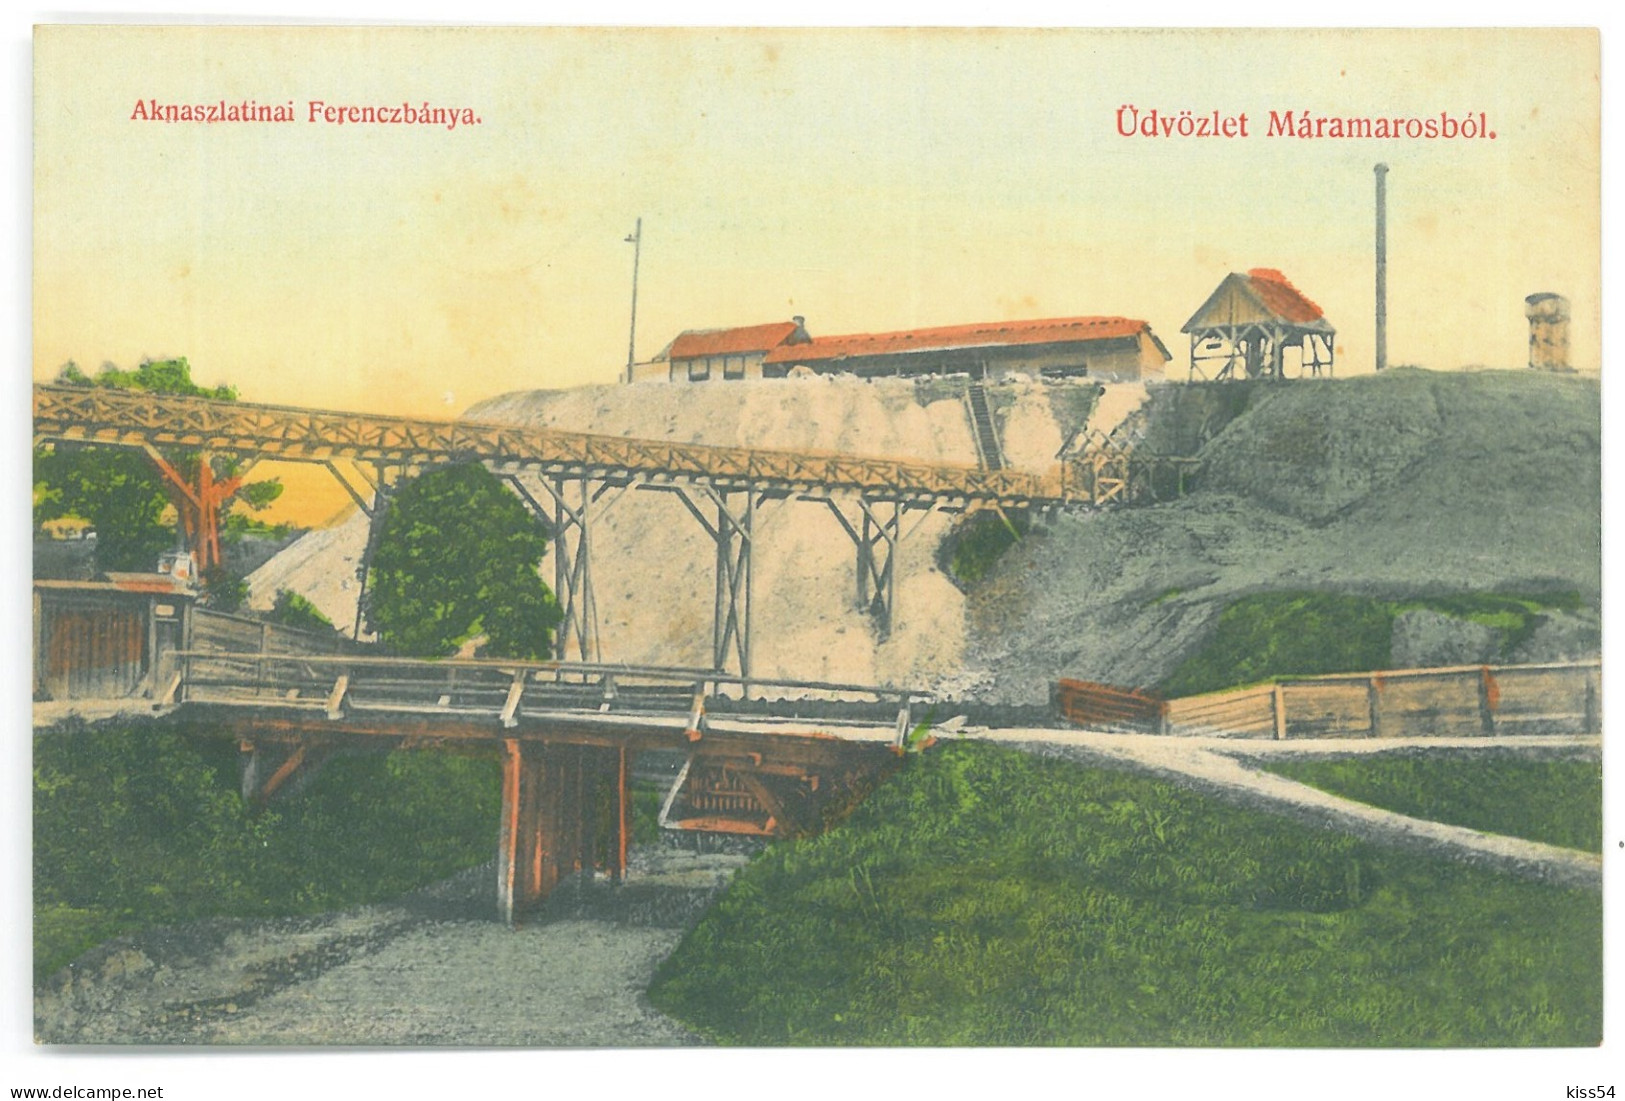 RO 40 - 25162 SIGHET, Maramures, Mine, Romania - Old Postcard - Unused - Rumänien